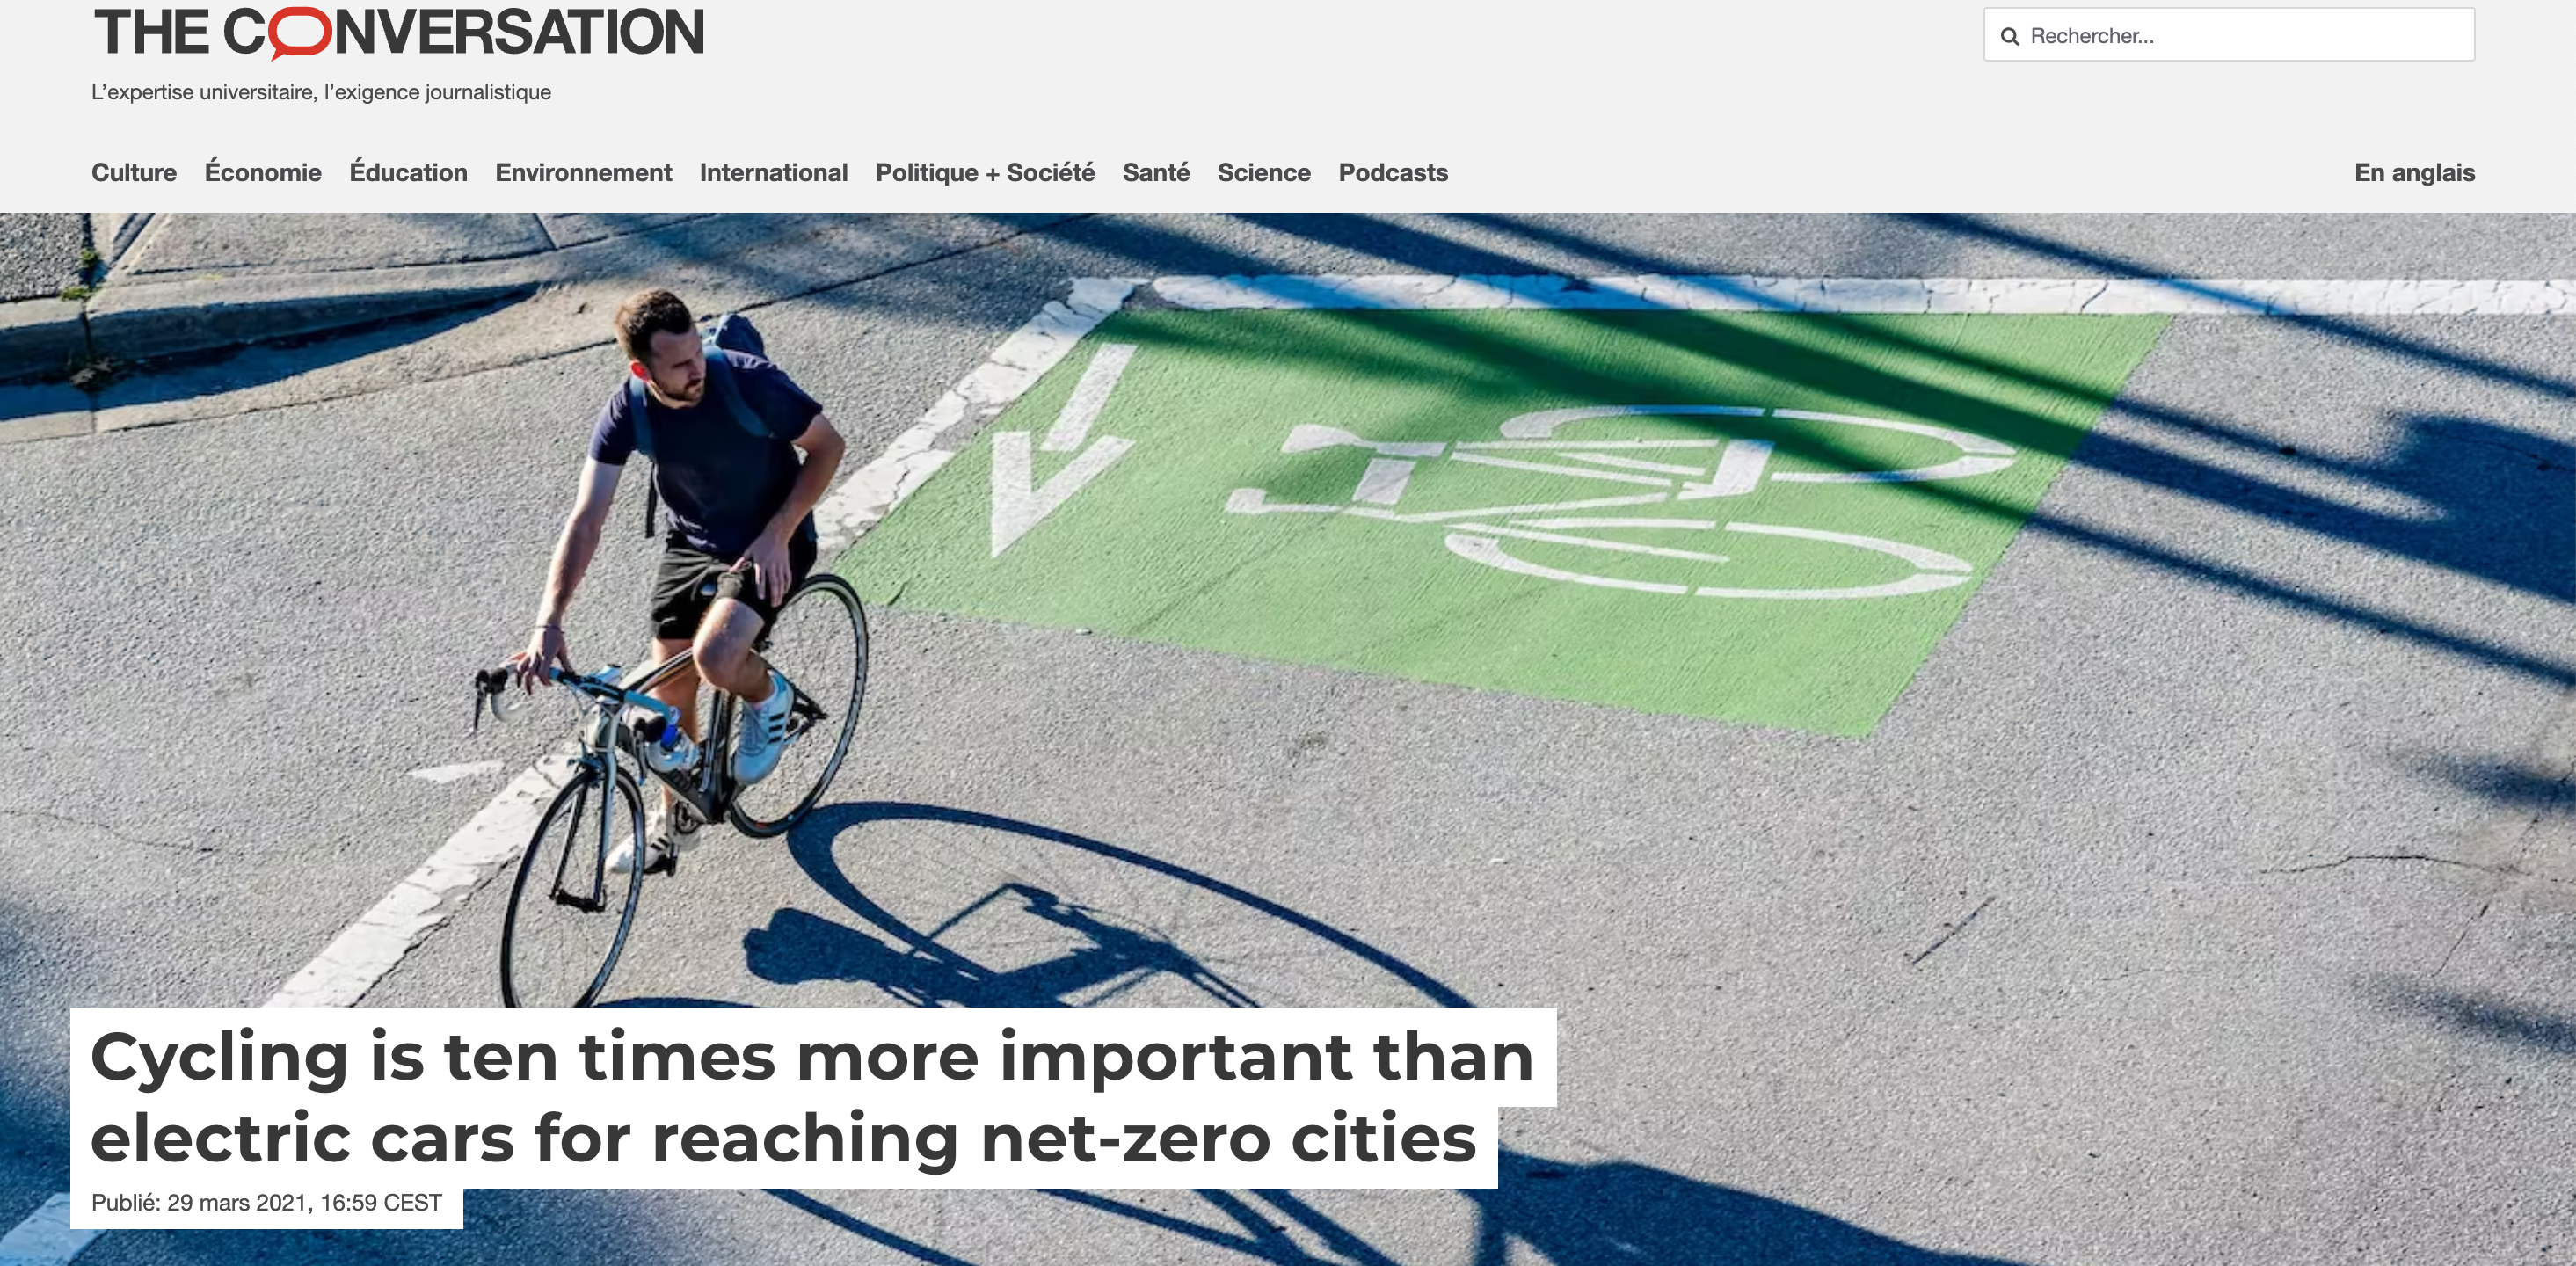 Le vélo, avenir des villes nette zéro